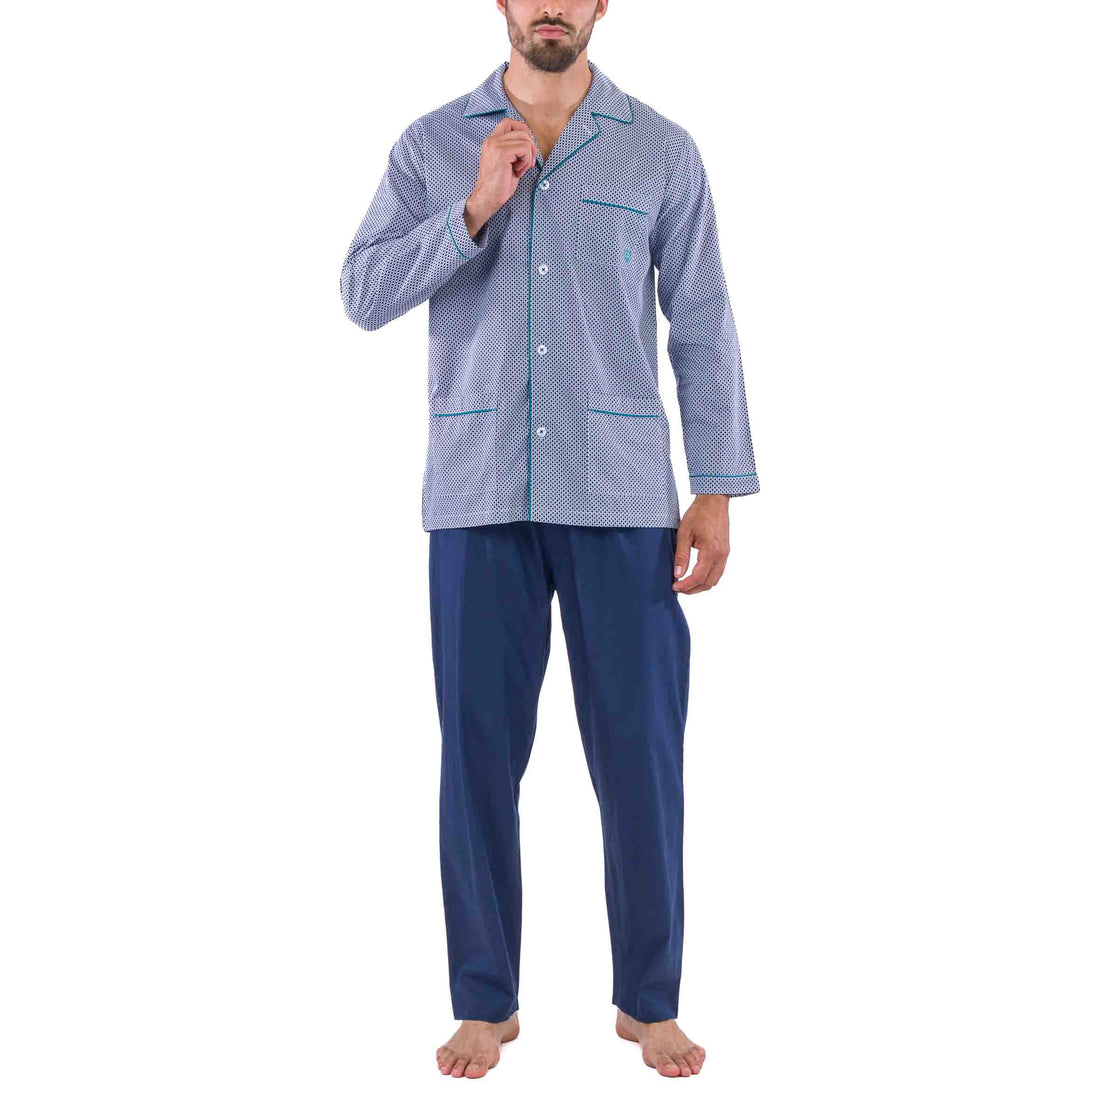 Pyjama Long Ouvert imprimé en popeline Pur Coton Peigné Bleu Marine Petits motifs